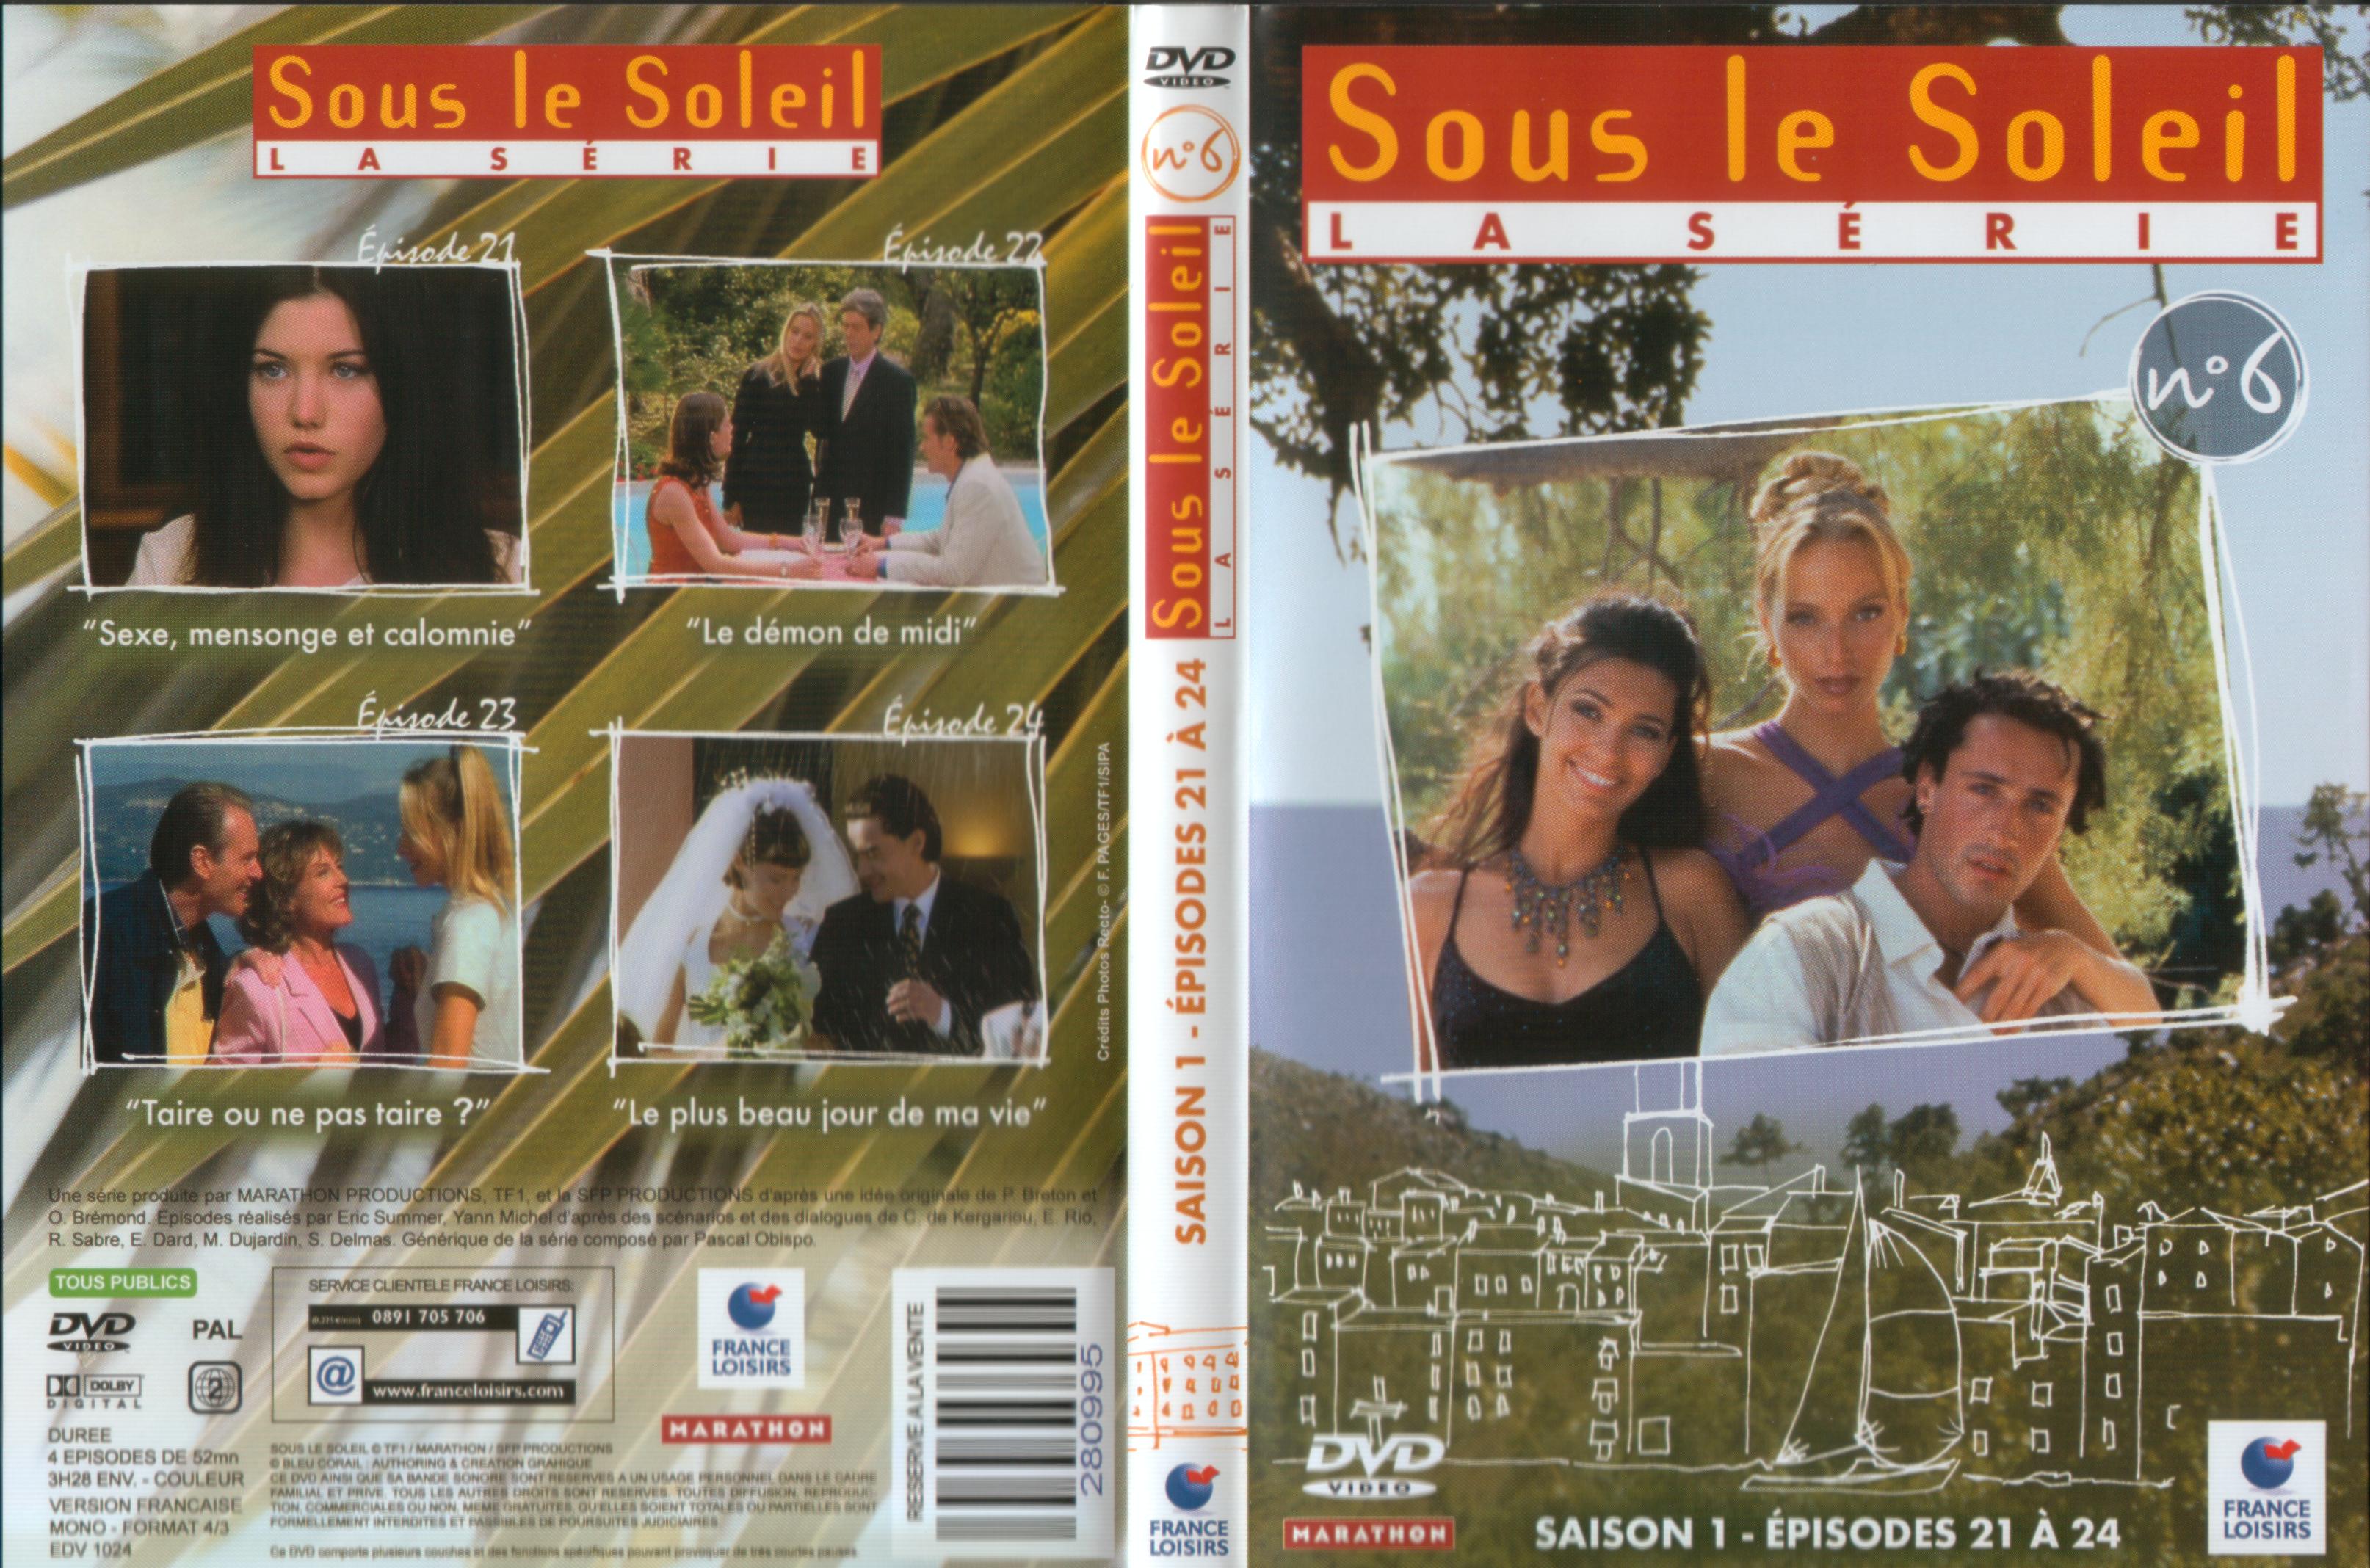 Jaquette DVD Sous le soleil saison 1 vol 6